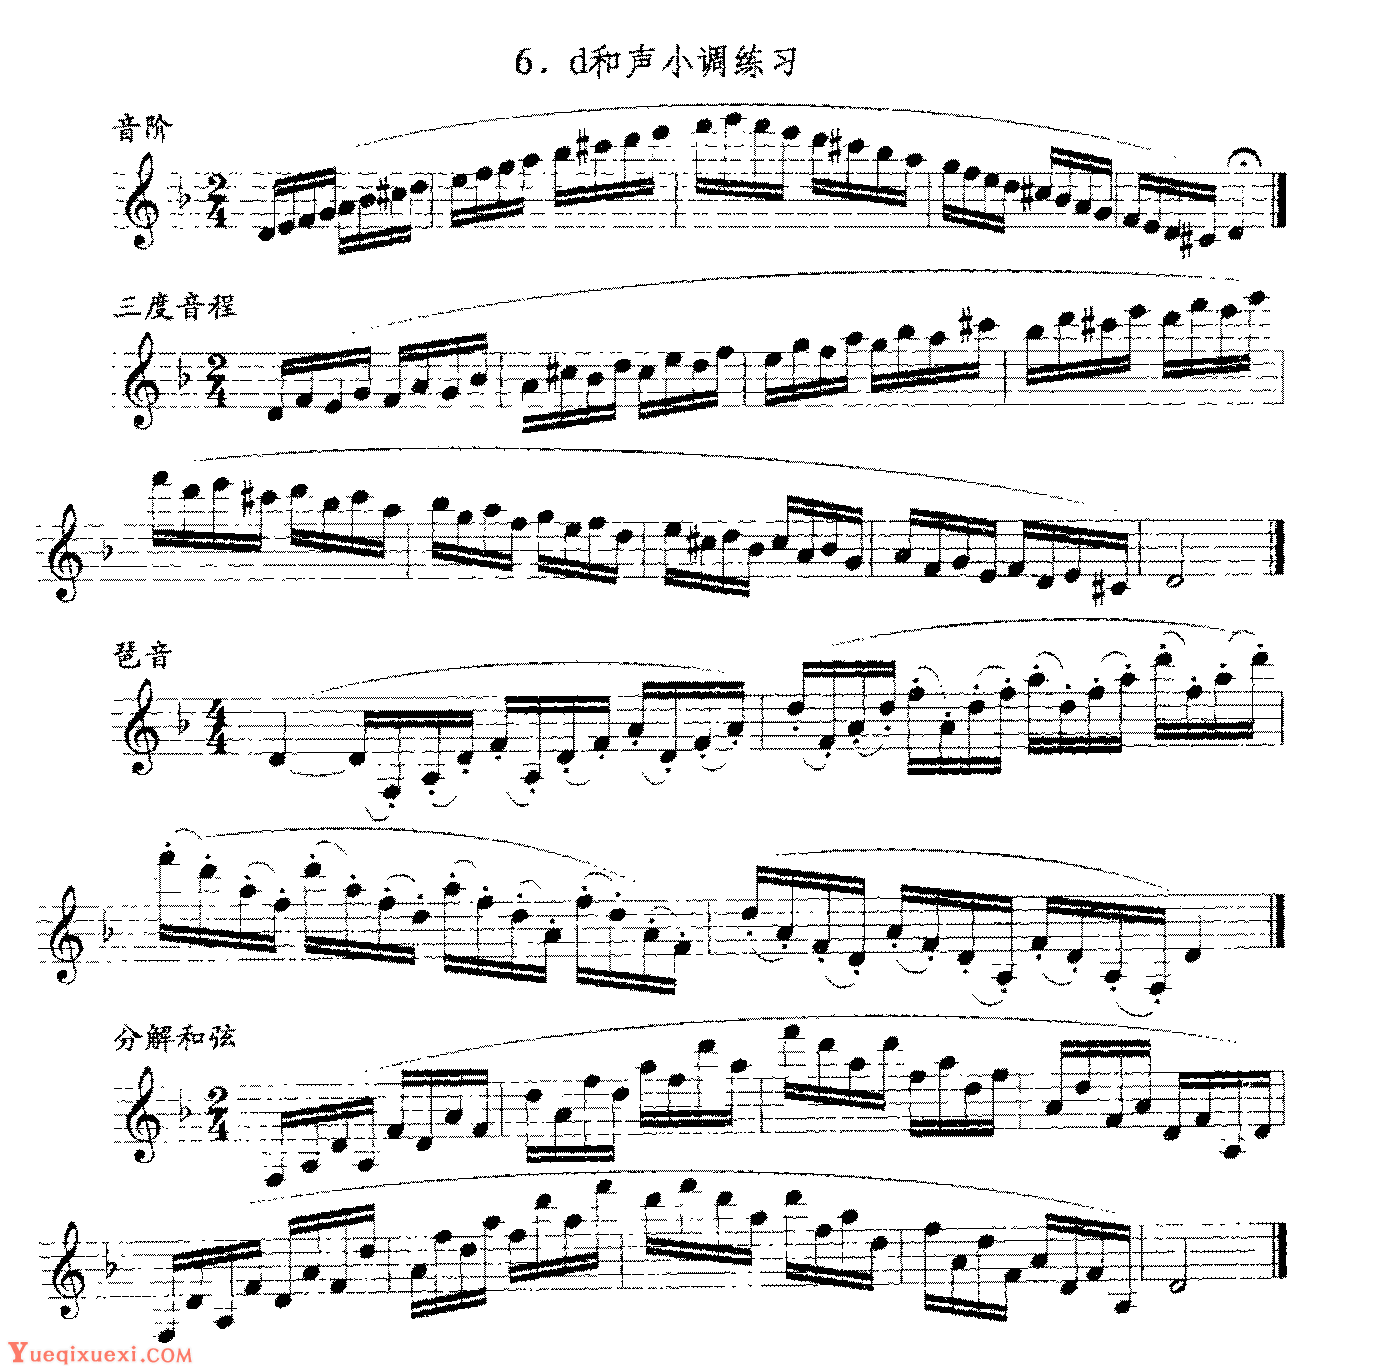 单簧管日常基础技术练习曲《d和声小调练习》